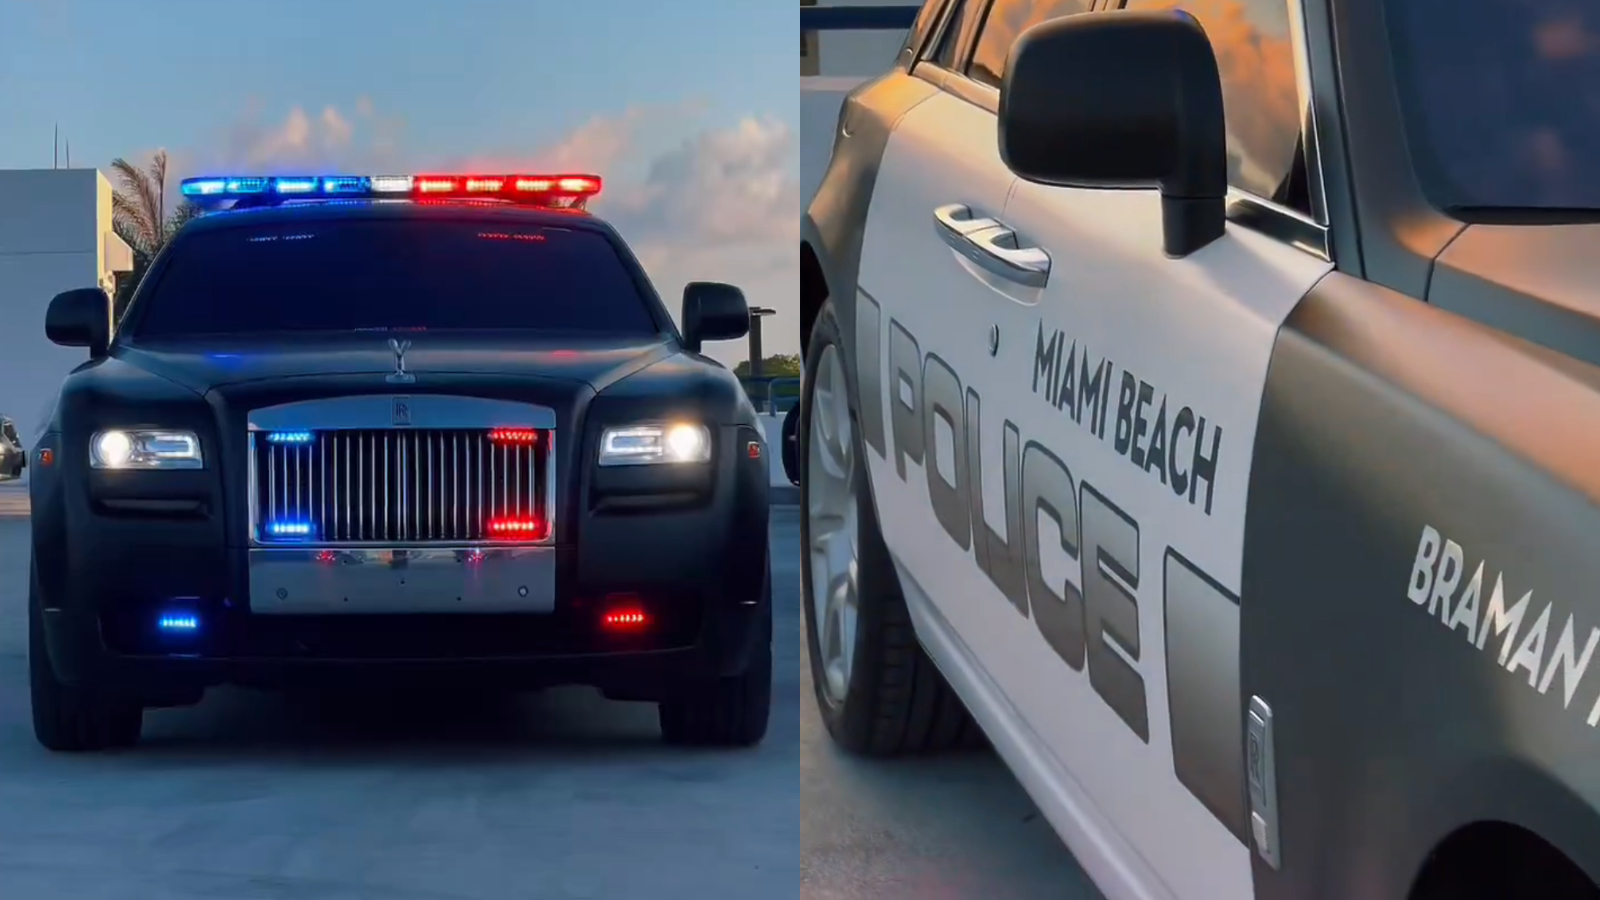 邁阿密警局竟選勞斯萊斯Ghost當警車！豪奢新戰力卻引民眾反彈